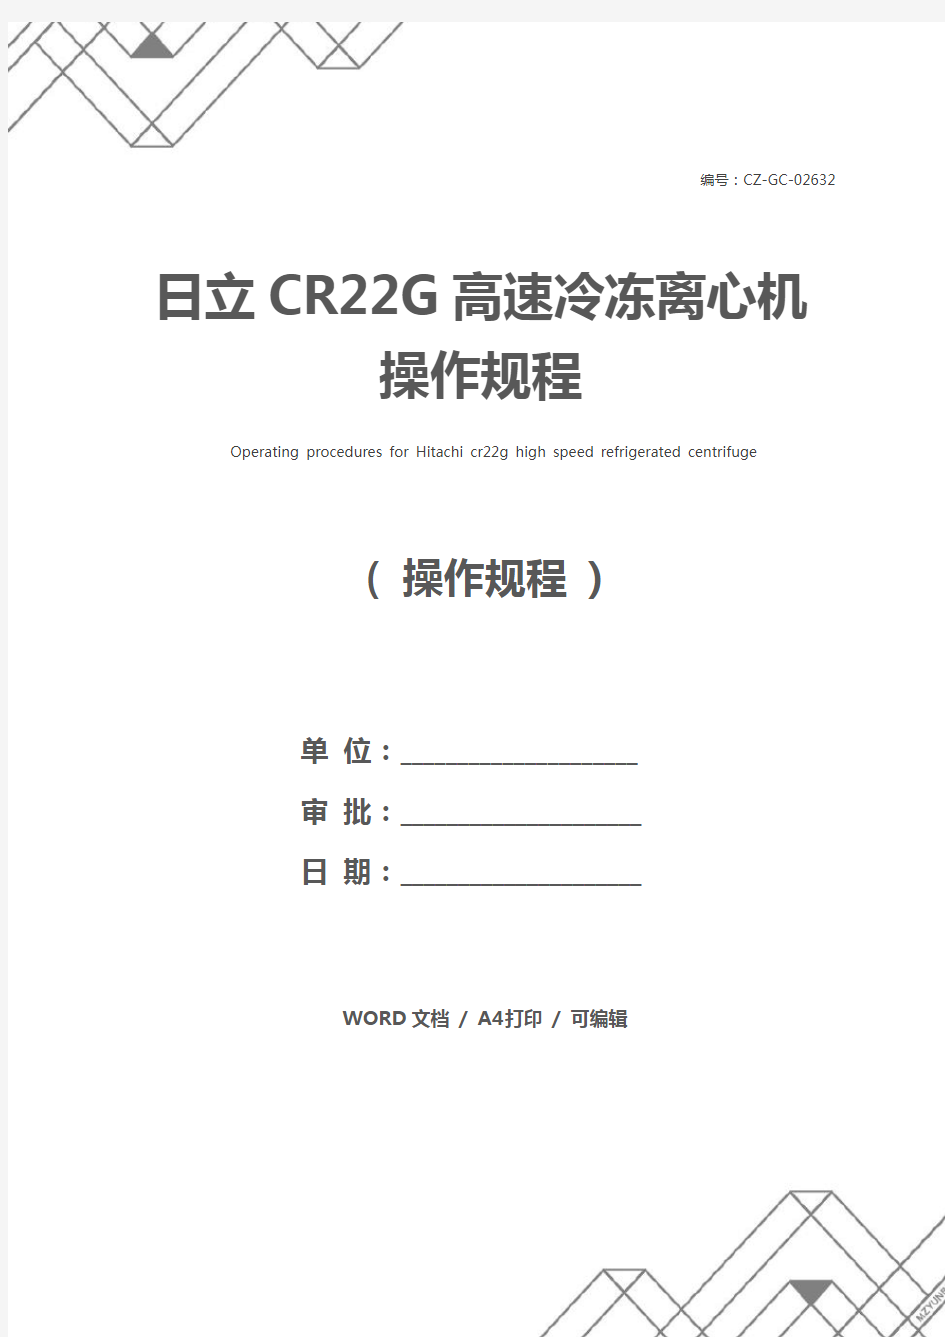 日立CR22G高速冷冻离心机操作规程